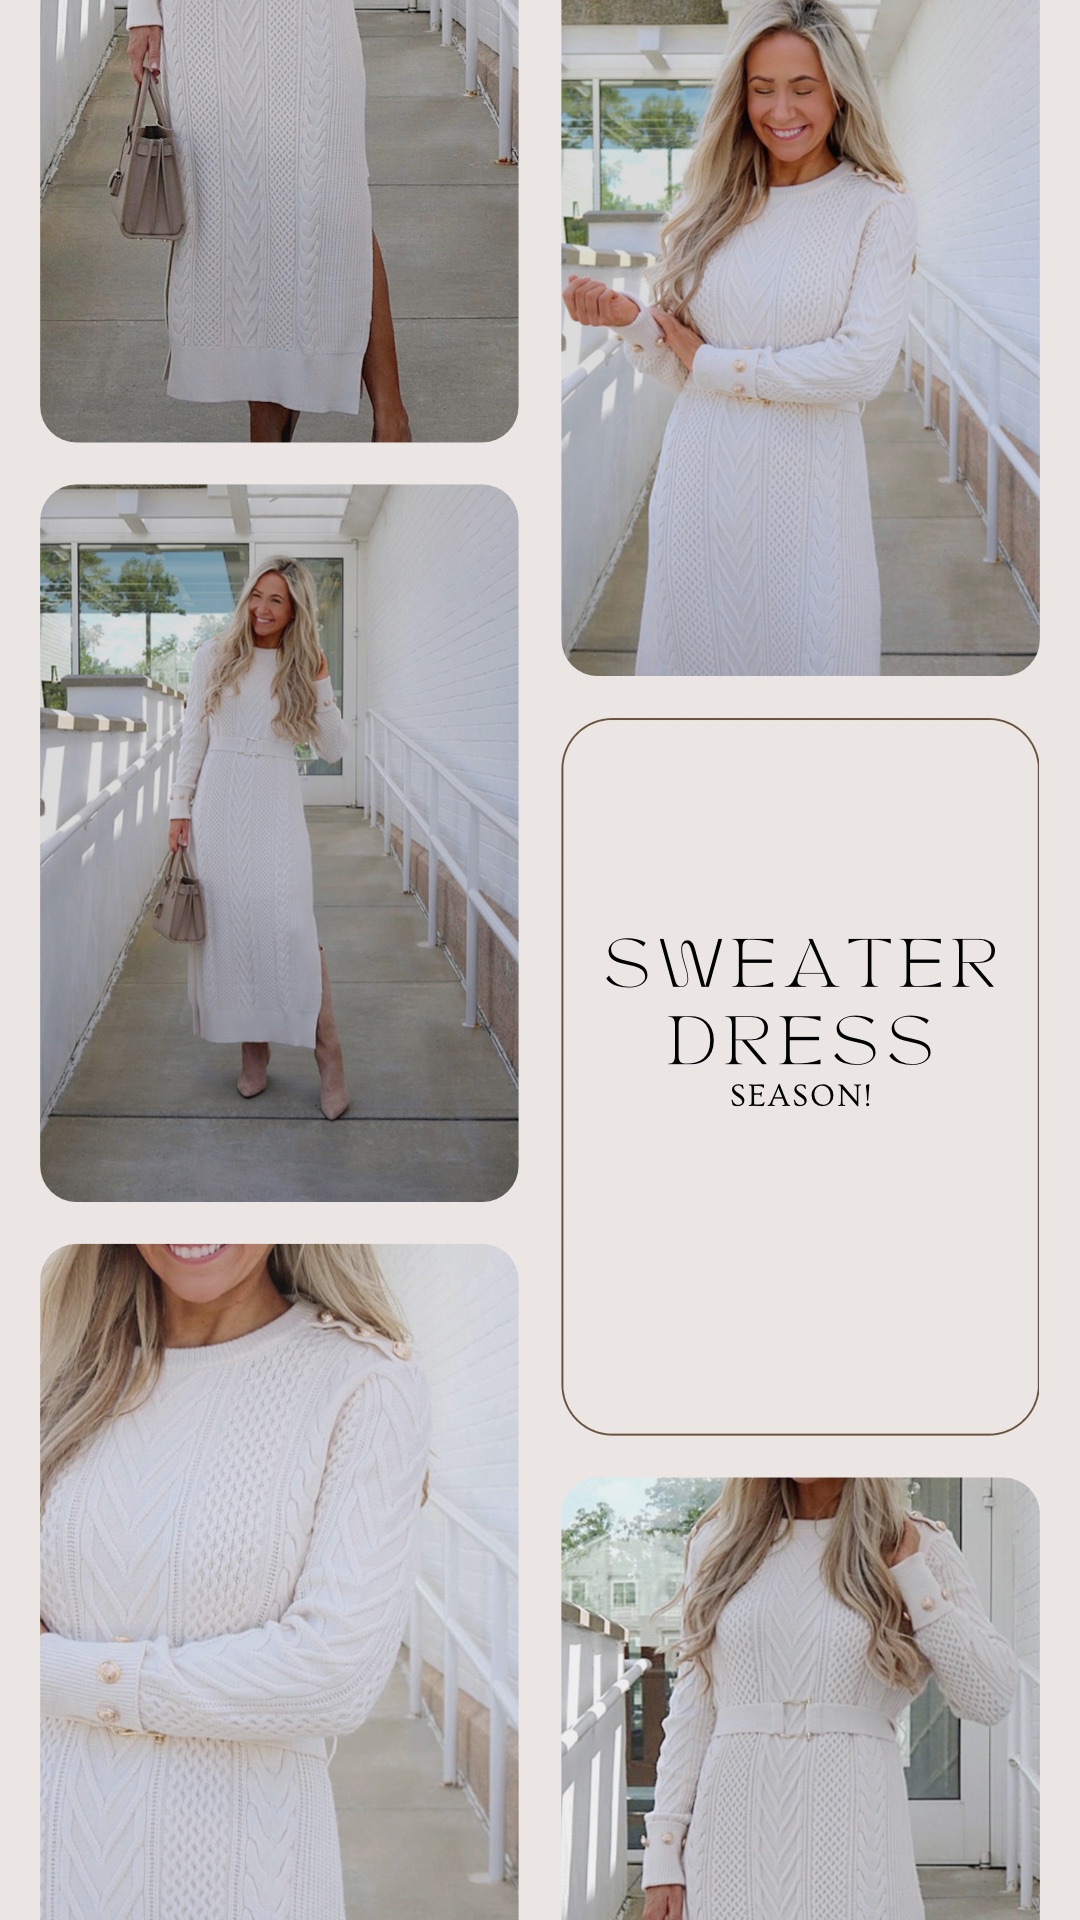 It’s Sweater Dress Season!